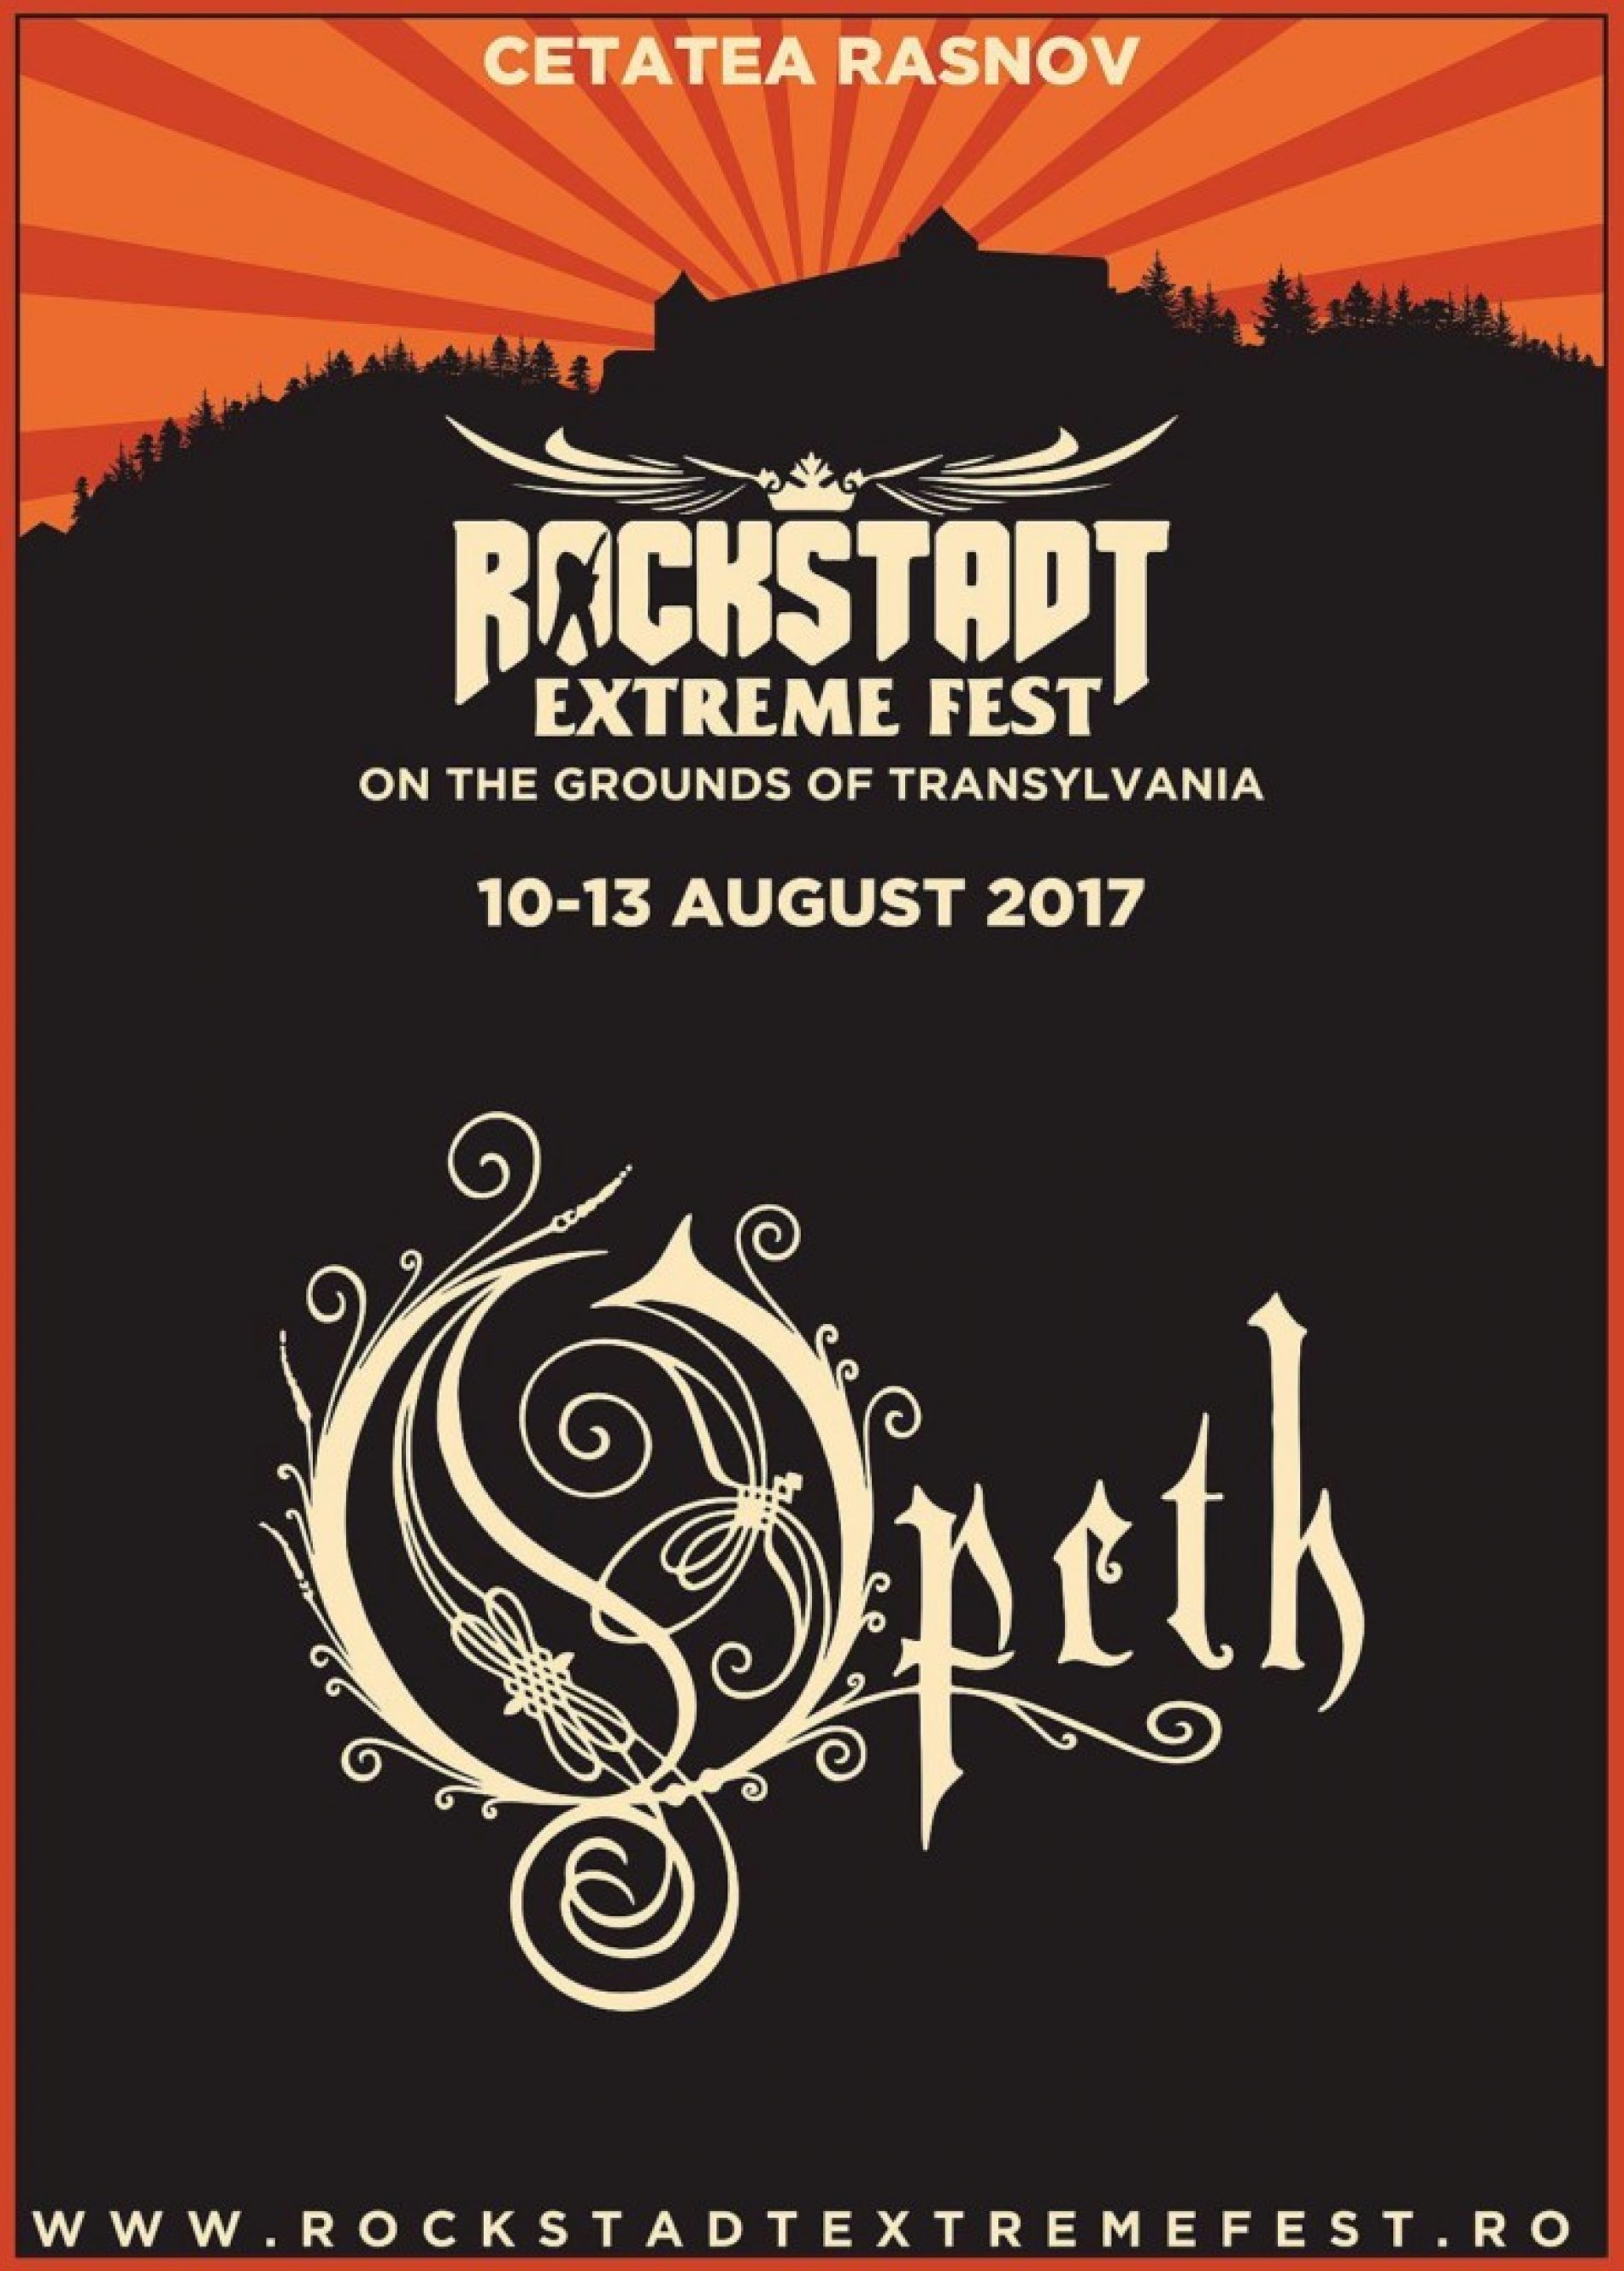 Opeth confirmati pentru Rockstadt Extreme Fest 2017